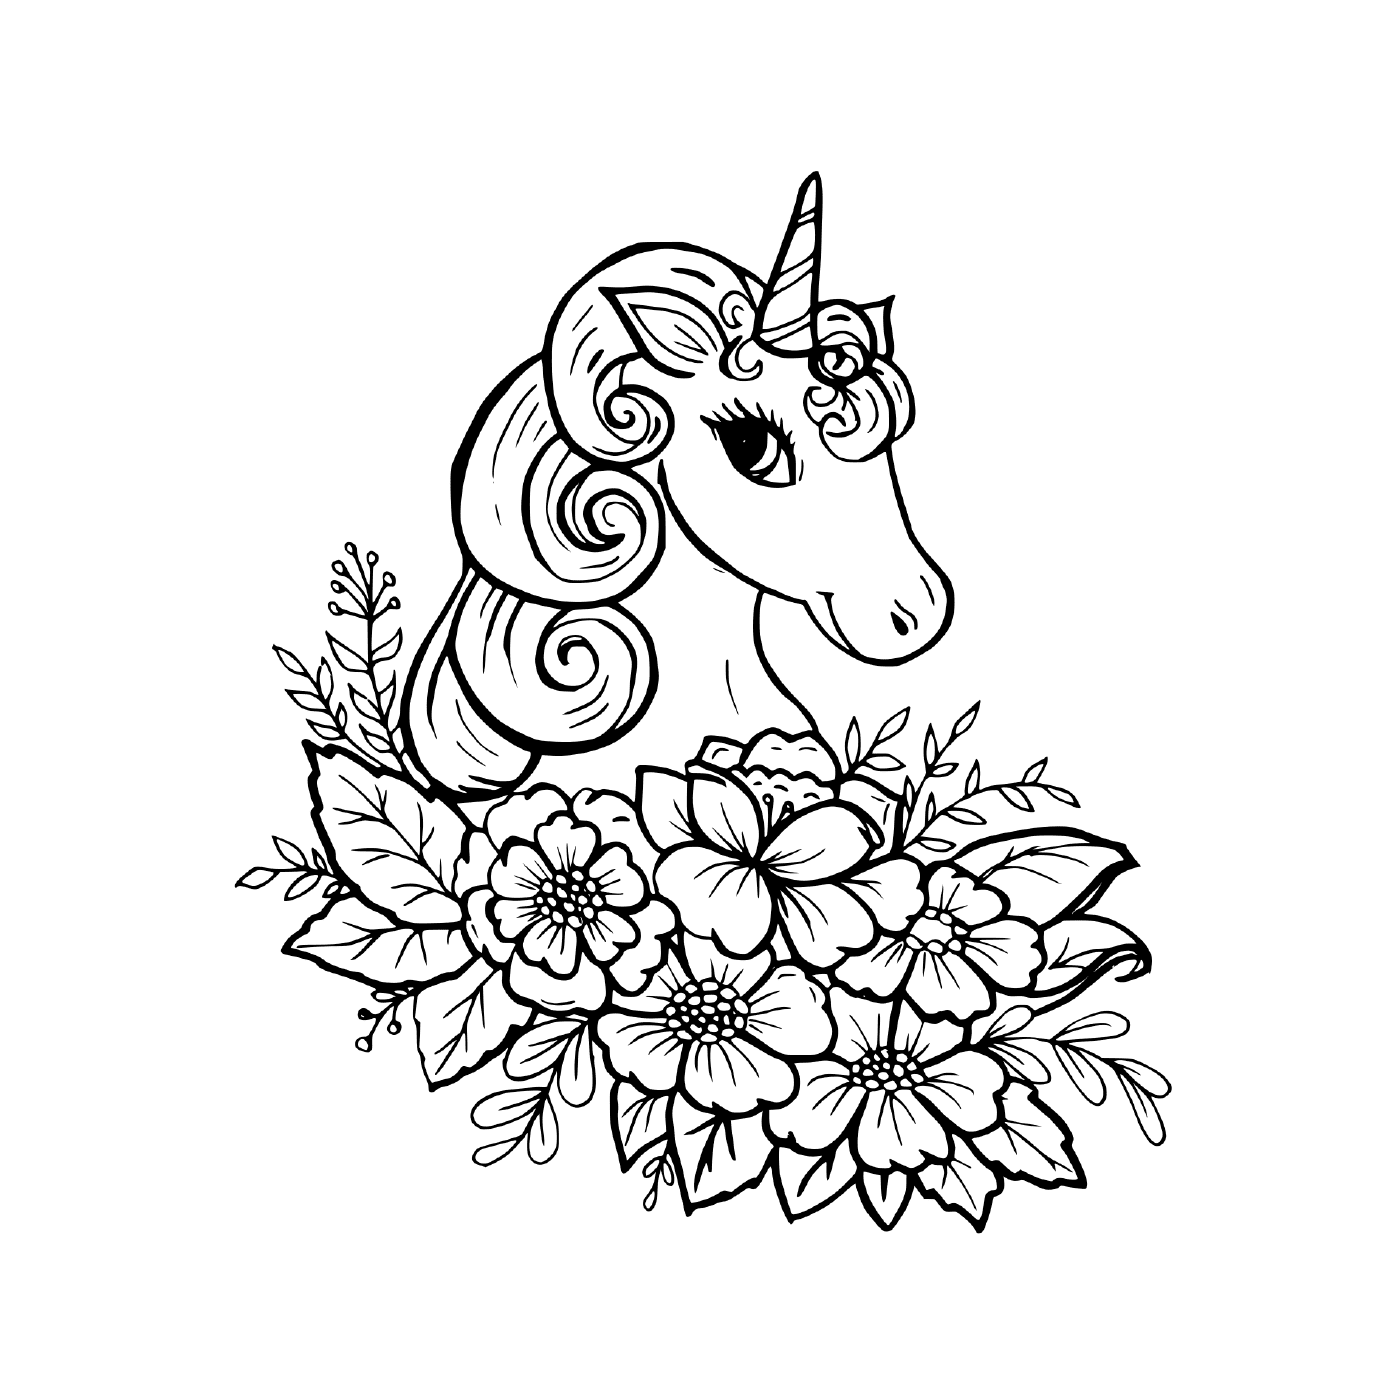  bellissimo unicorno con fiori 